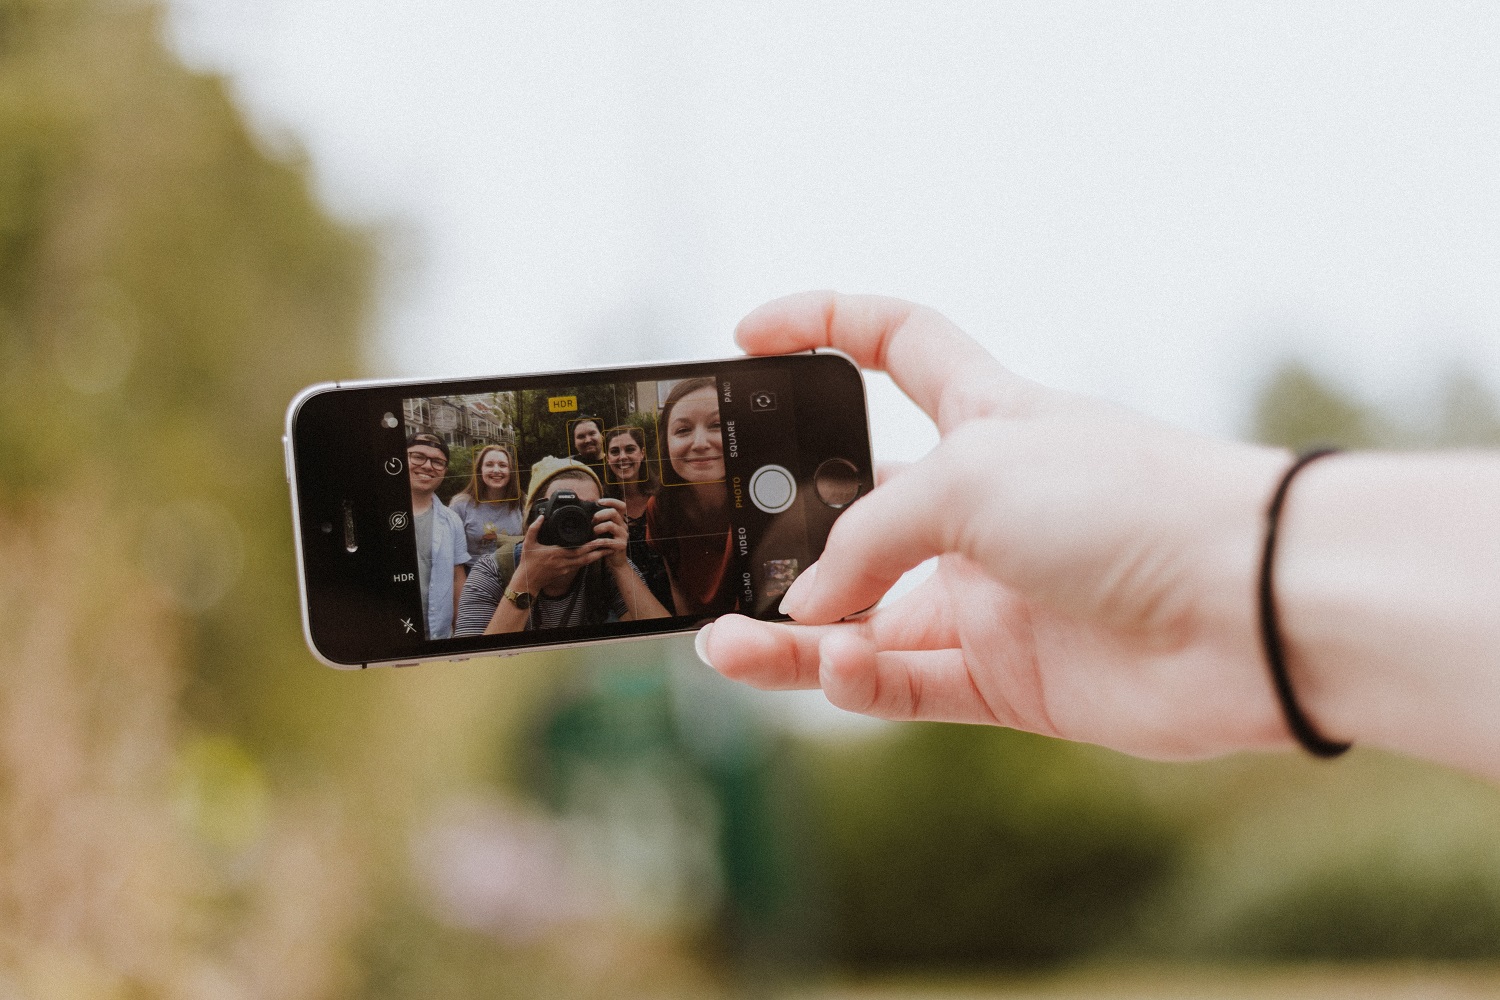 6 dažniausiai pasitaikančios klaidos fotografuojant išmaniuoju telefonu – kaip jų išvengti?